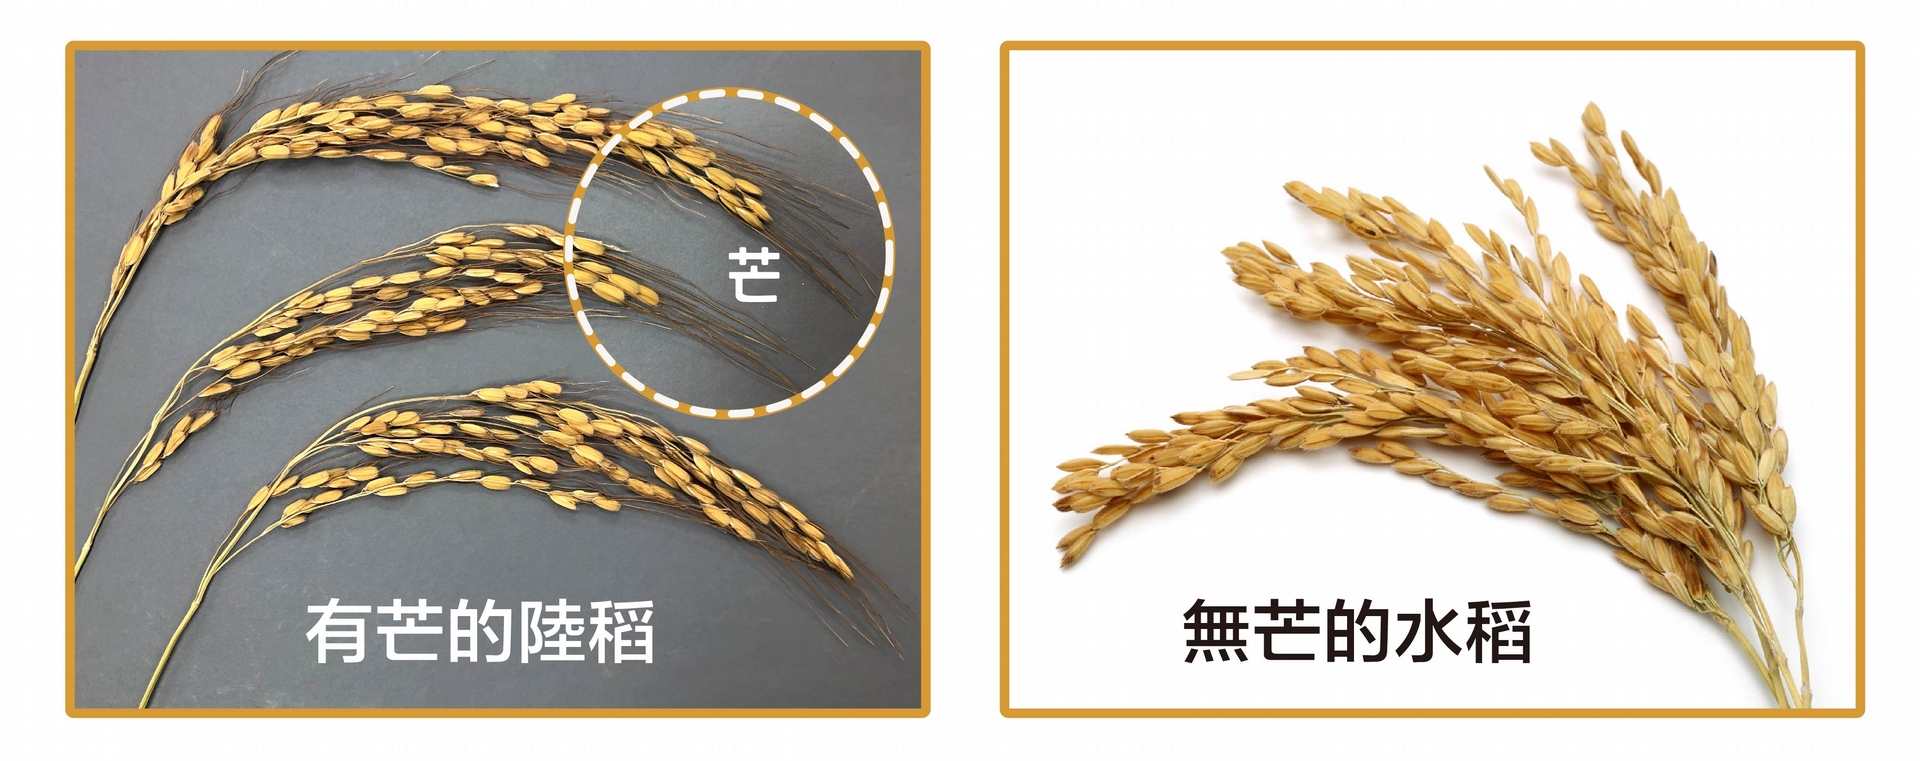 有芒的陸稻 (左圖) 與無芒的水稻 (右圖)。什麼是馴化？人類以稻米為糧食，會選擇顆粒大的、產量多的、方便採收的稻子，久而久之，稻子的性狀就會被馴化–趨向於人類所喜好的特性，像是米粒變得大而飽滿、穀粒不具有芒、不容易落粒、植株直立而不倒伏等等。野生陸稻多有稻芒，主要的功用是防止鳥兒啄食稻穀，還可幫助穀粒落地或附著在動物身上，以便傳播。不過，有芒的稻子收割和儲藏就不方便了。我們現在栽種的水稻，經過長期的馴化，穀粒上都沒有「芒」了。 攝影│林洵安 (左圖) 圖片來源│iStock (右圖) 